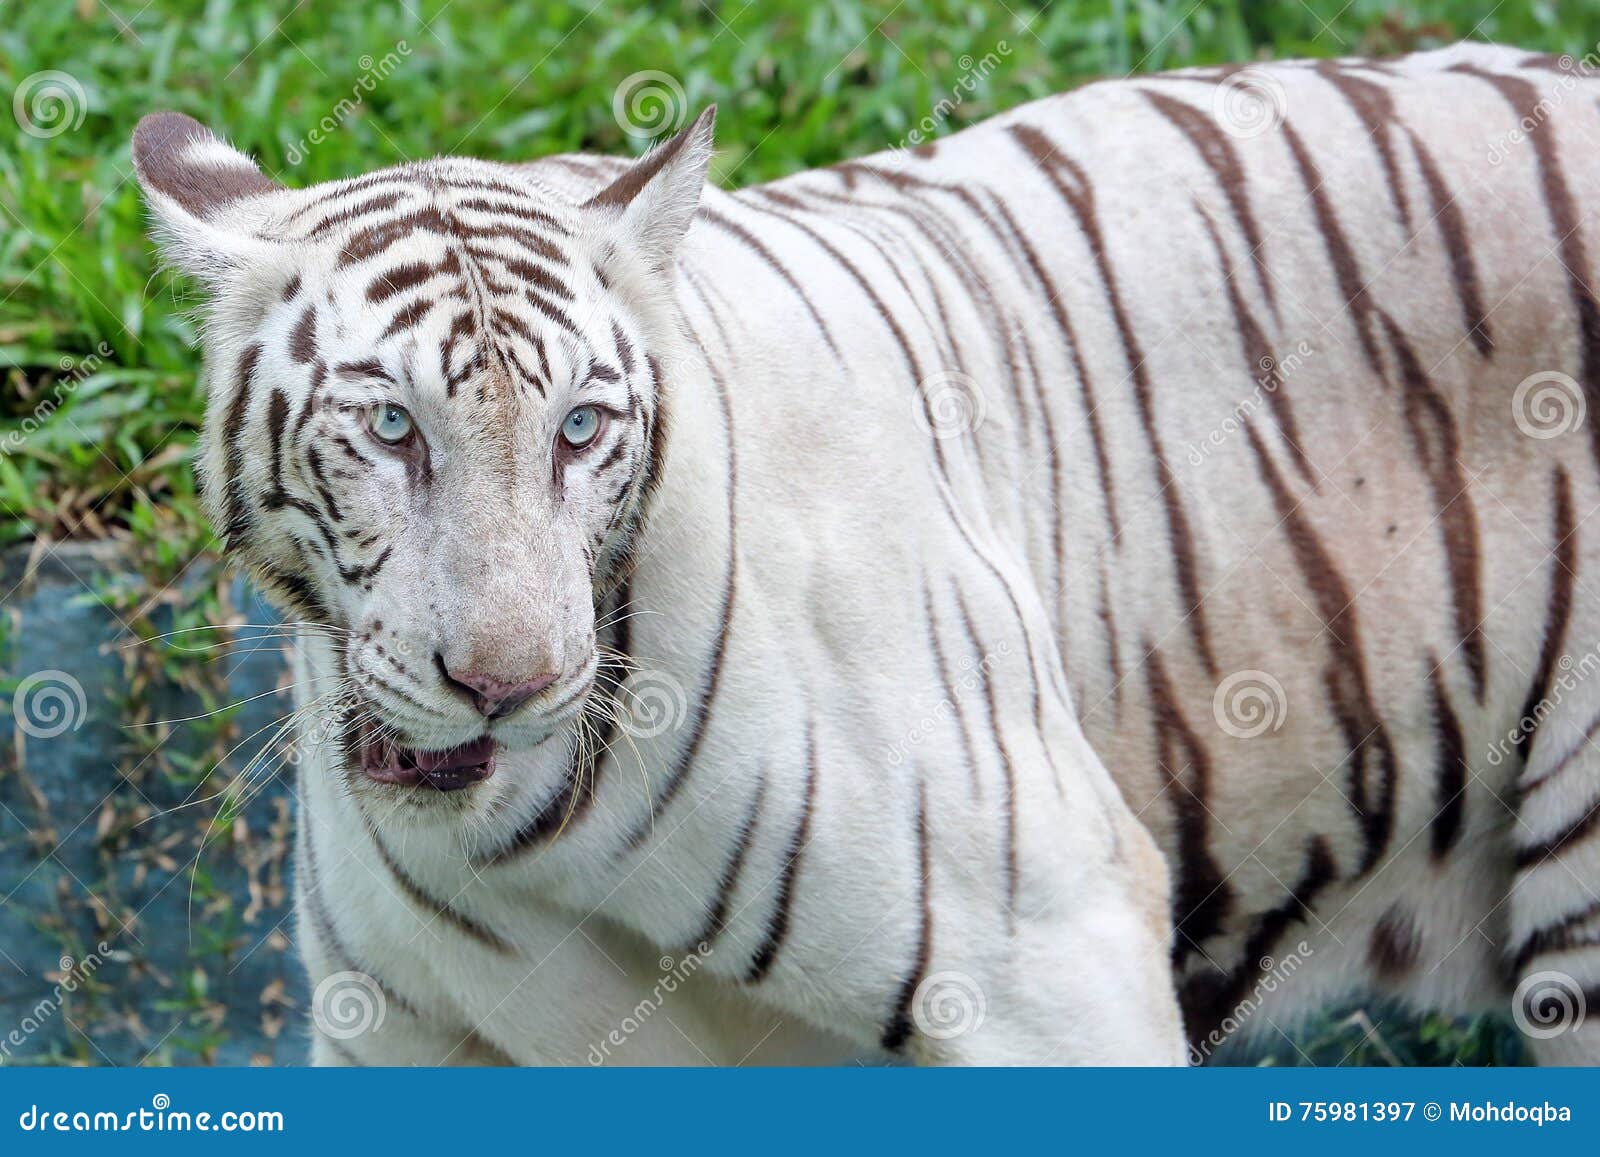 Albino Bengal Tiger stockbild. Bild von katze, bart, albino - 75981397